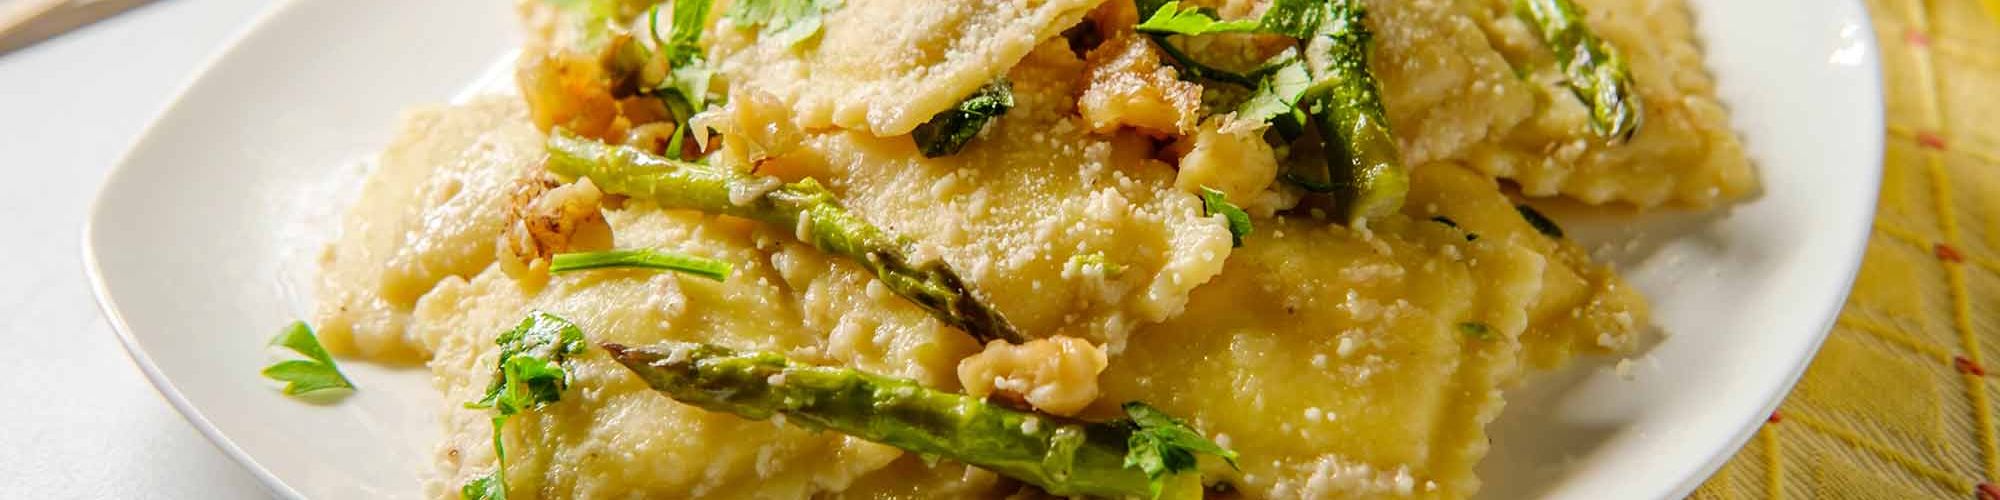 ricetta Ravioloni con asparagi, noci e burro al limone con pasta fresca